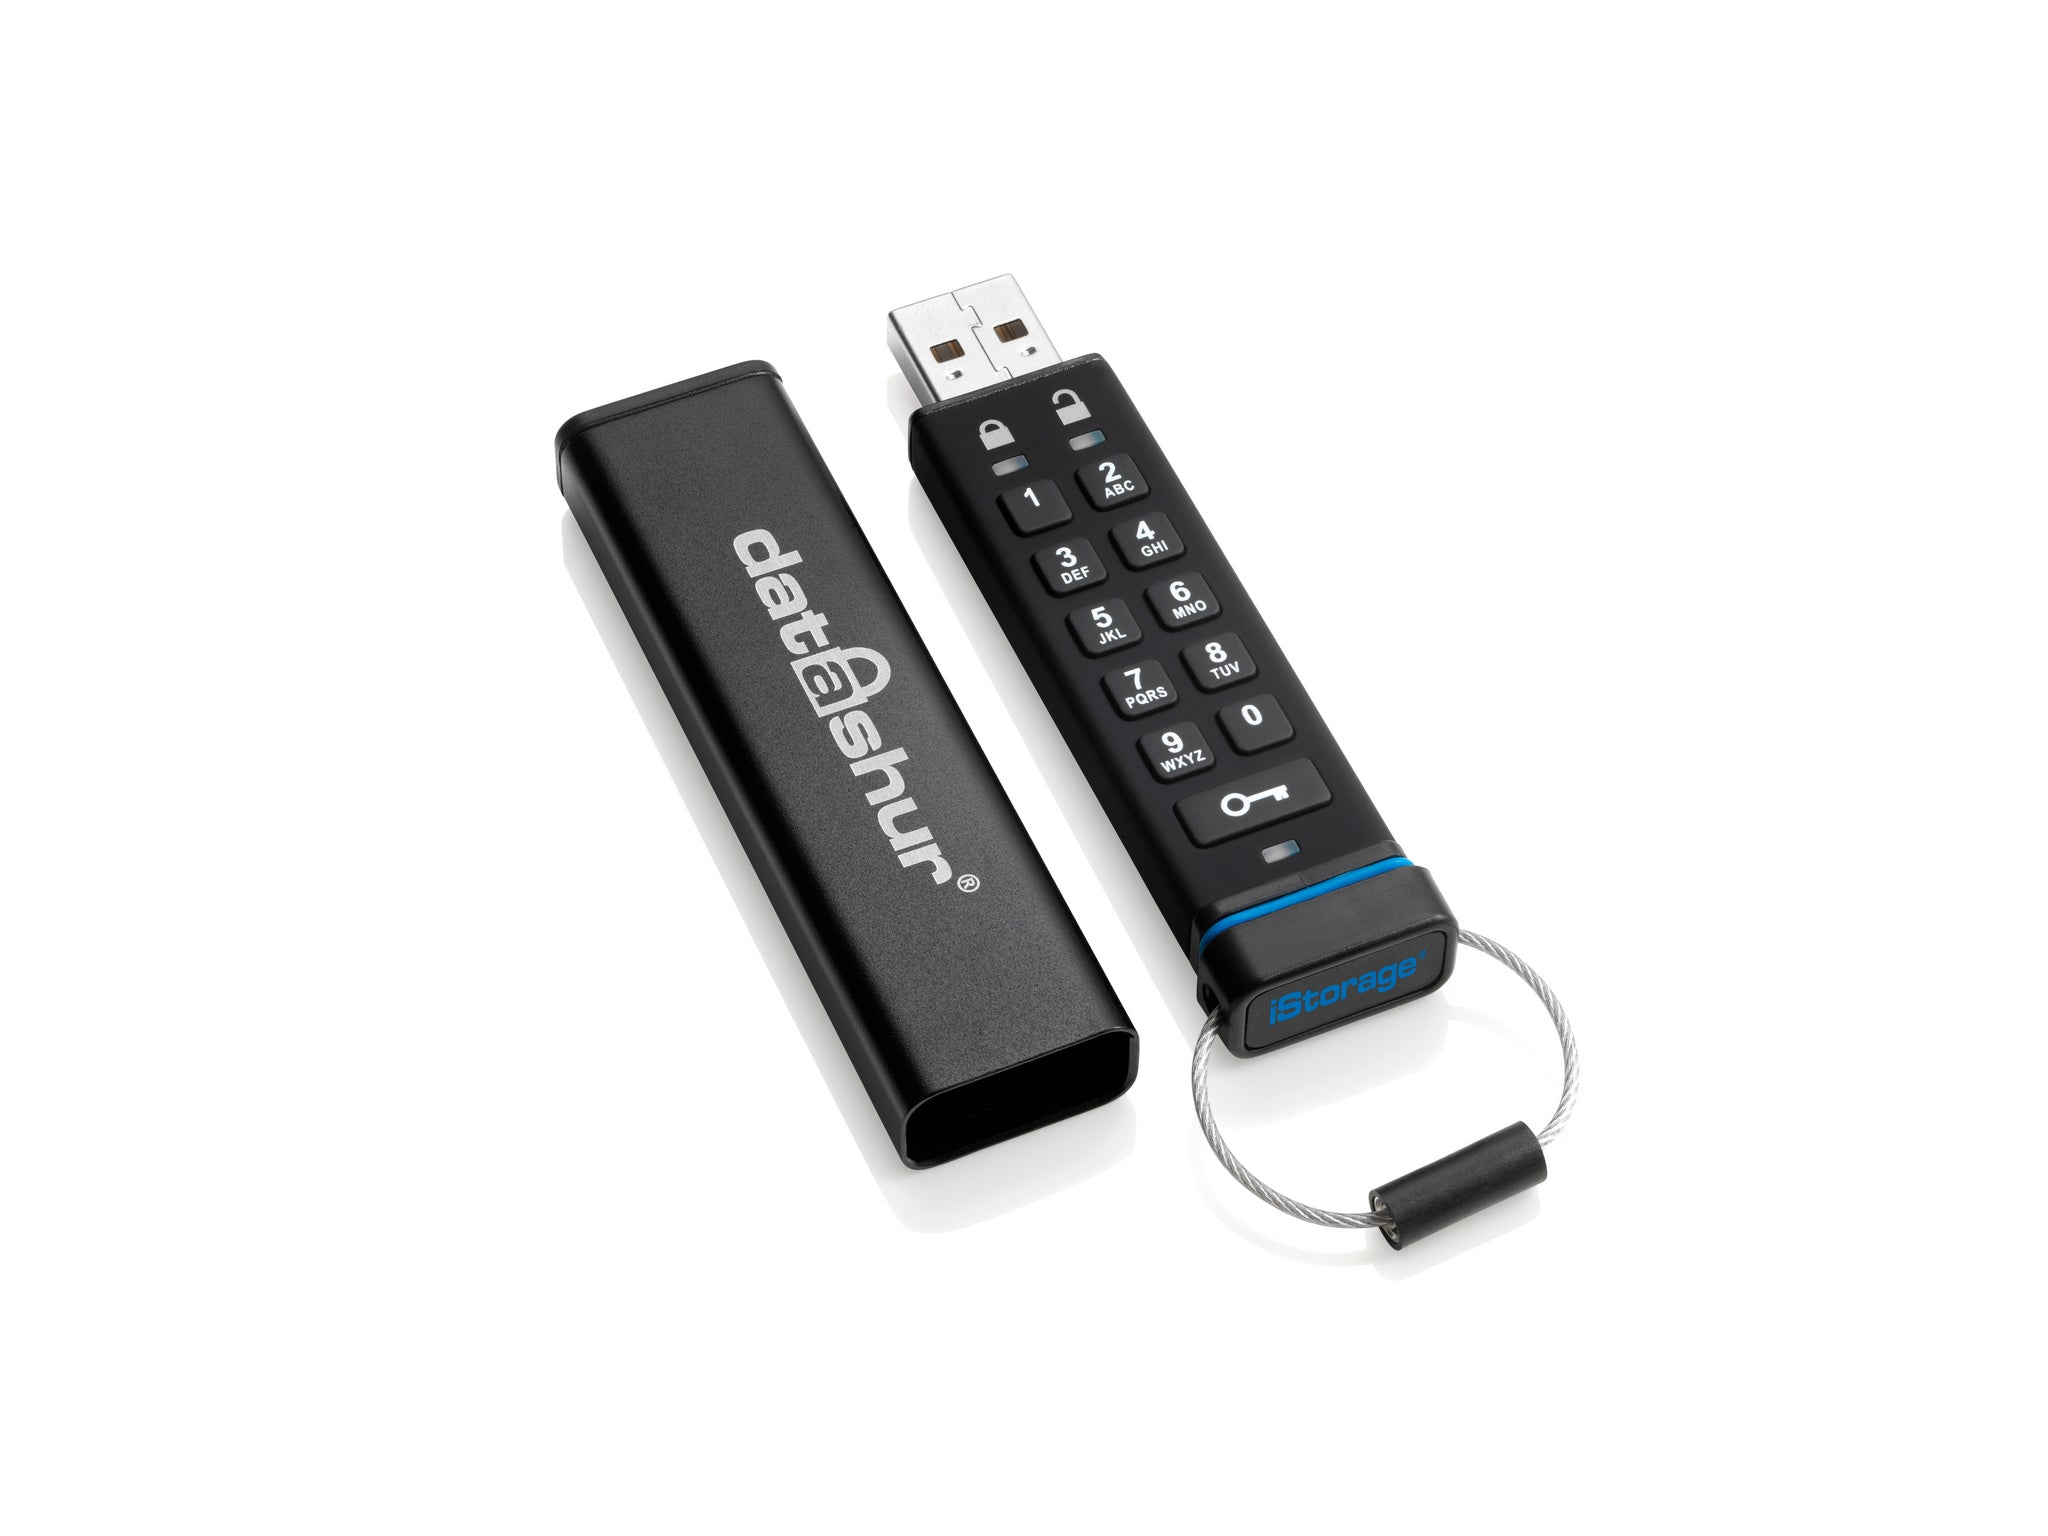 iStorage datAshur USB-Stick | E-QUIPMENT